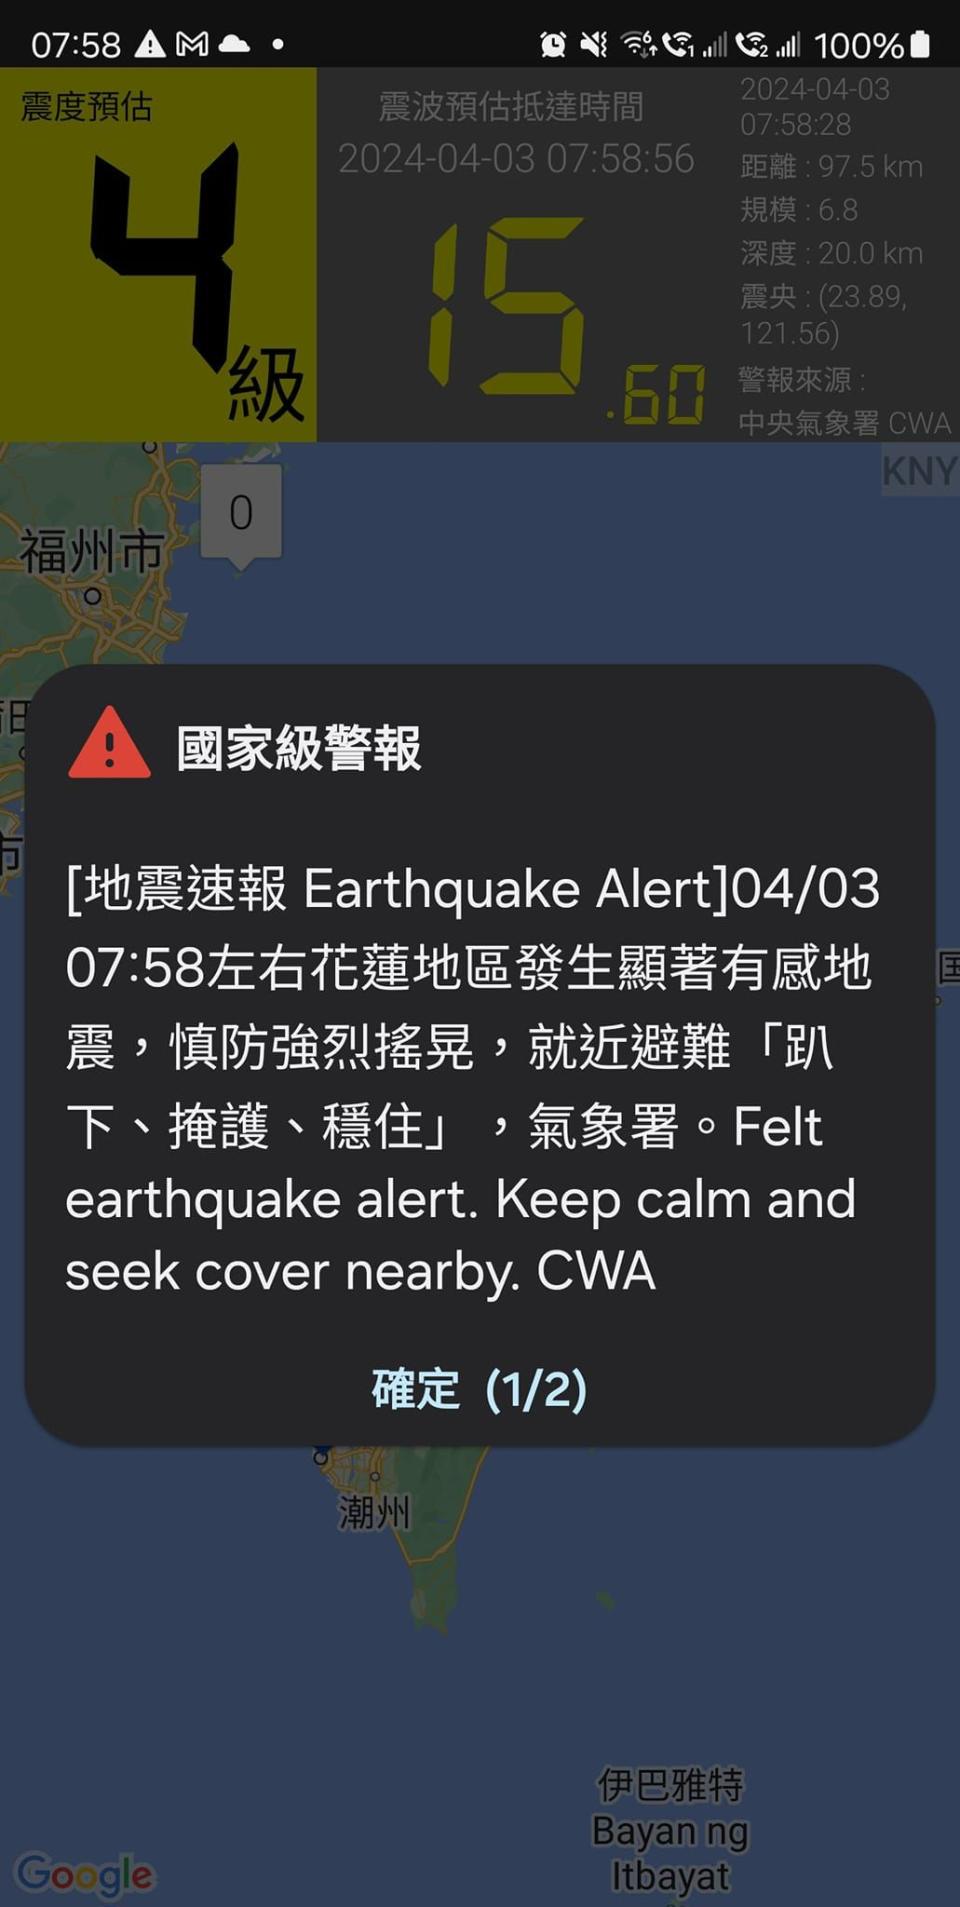 「KNY台灣天氣.地震速報」App在主震前發布警報，上方還有倒數時間。（翻攝自「KNY台灣天氣.地震速報」臉書）